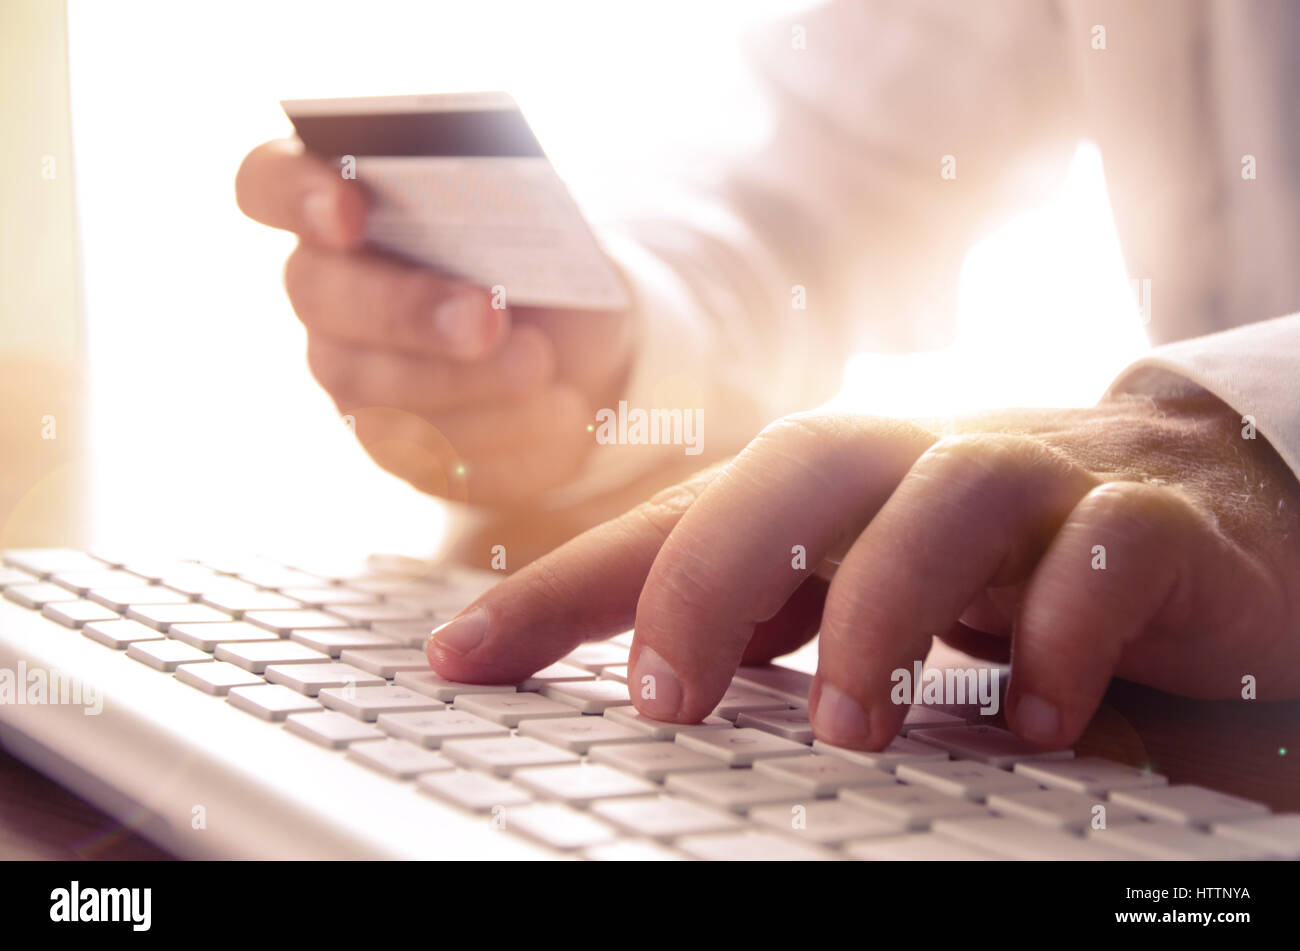 Nahaufnahme des Mannes Hände halten Kreditkarte und Computer-Tastatur. Konzept für e-Commerce, Online-shopping, e-Banking, Internet-Sicherheit. Stockfoto